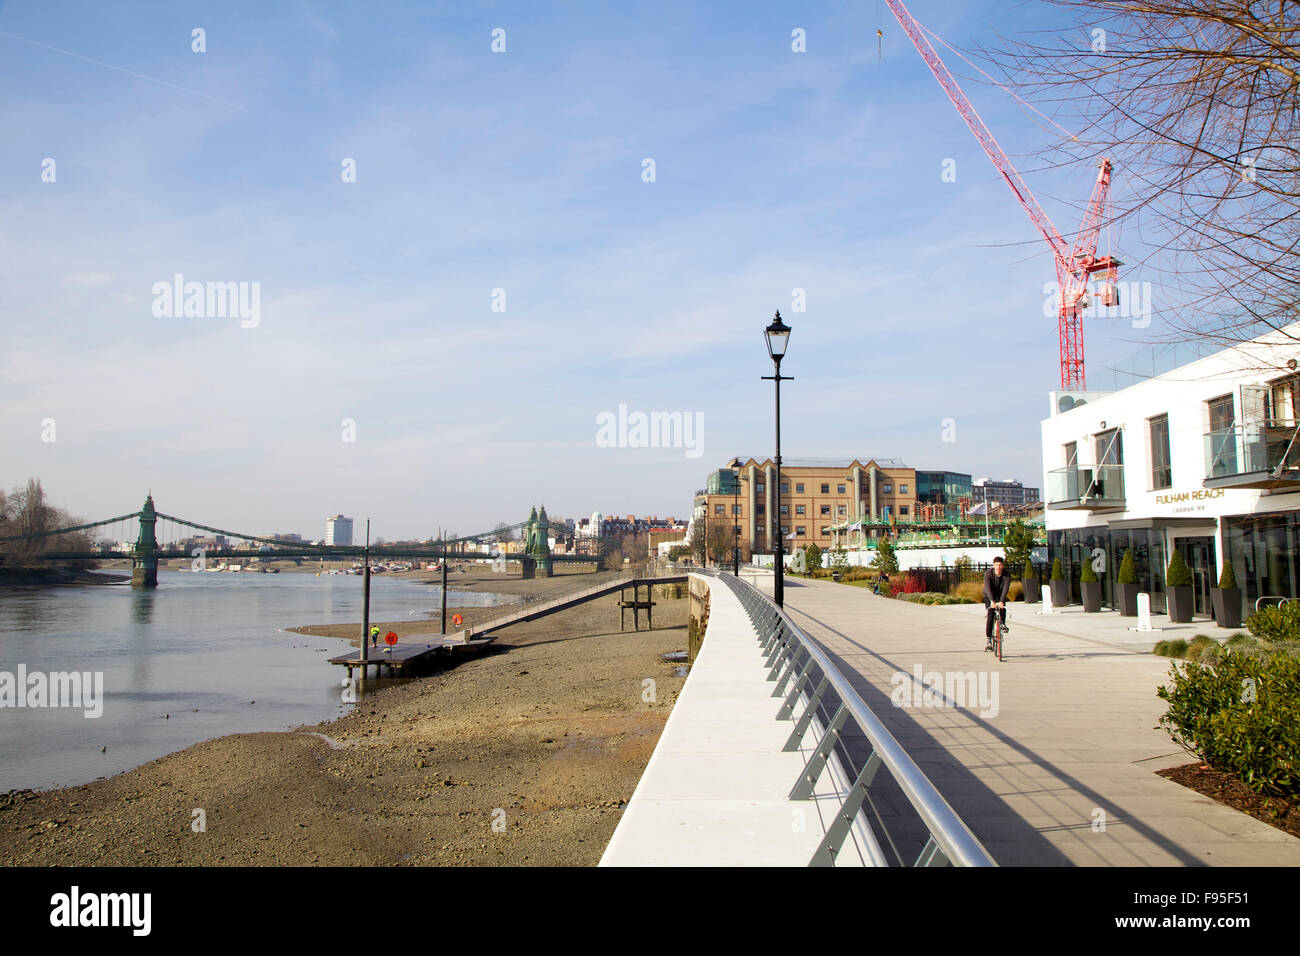 Hammersmith, London. Blick auf die Themse-Pfad mit einem Radsportler, die auf sie. Bau Kran und Brücke in der Ferne. Stockfoto